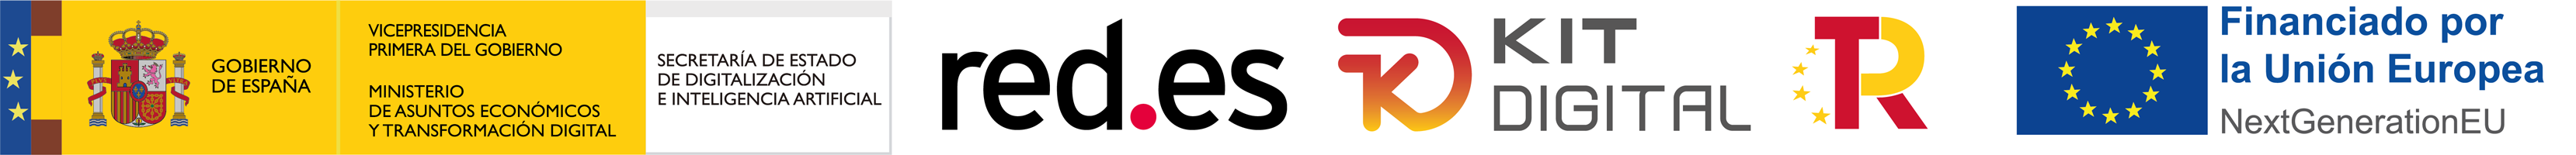 Logotipos de entidades que han hecho posible el programa del Kit Digital